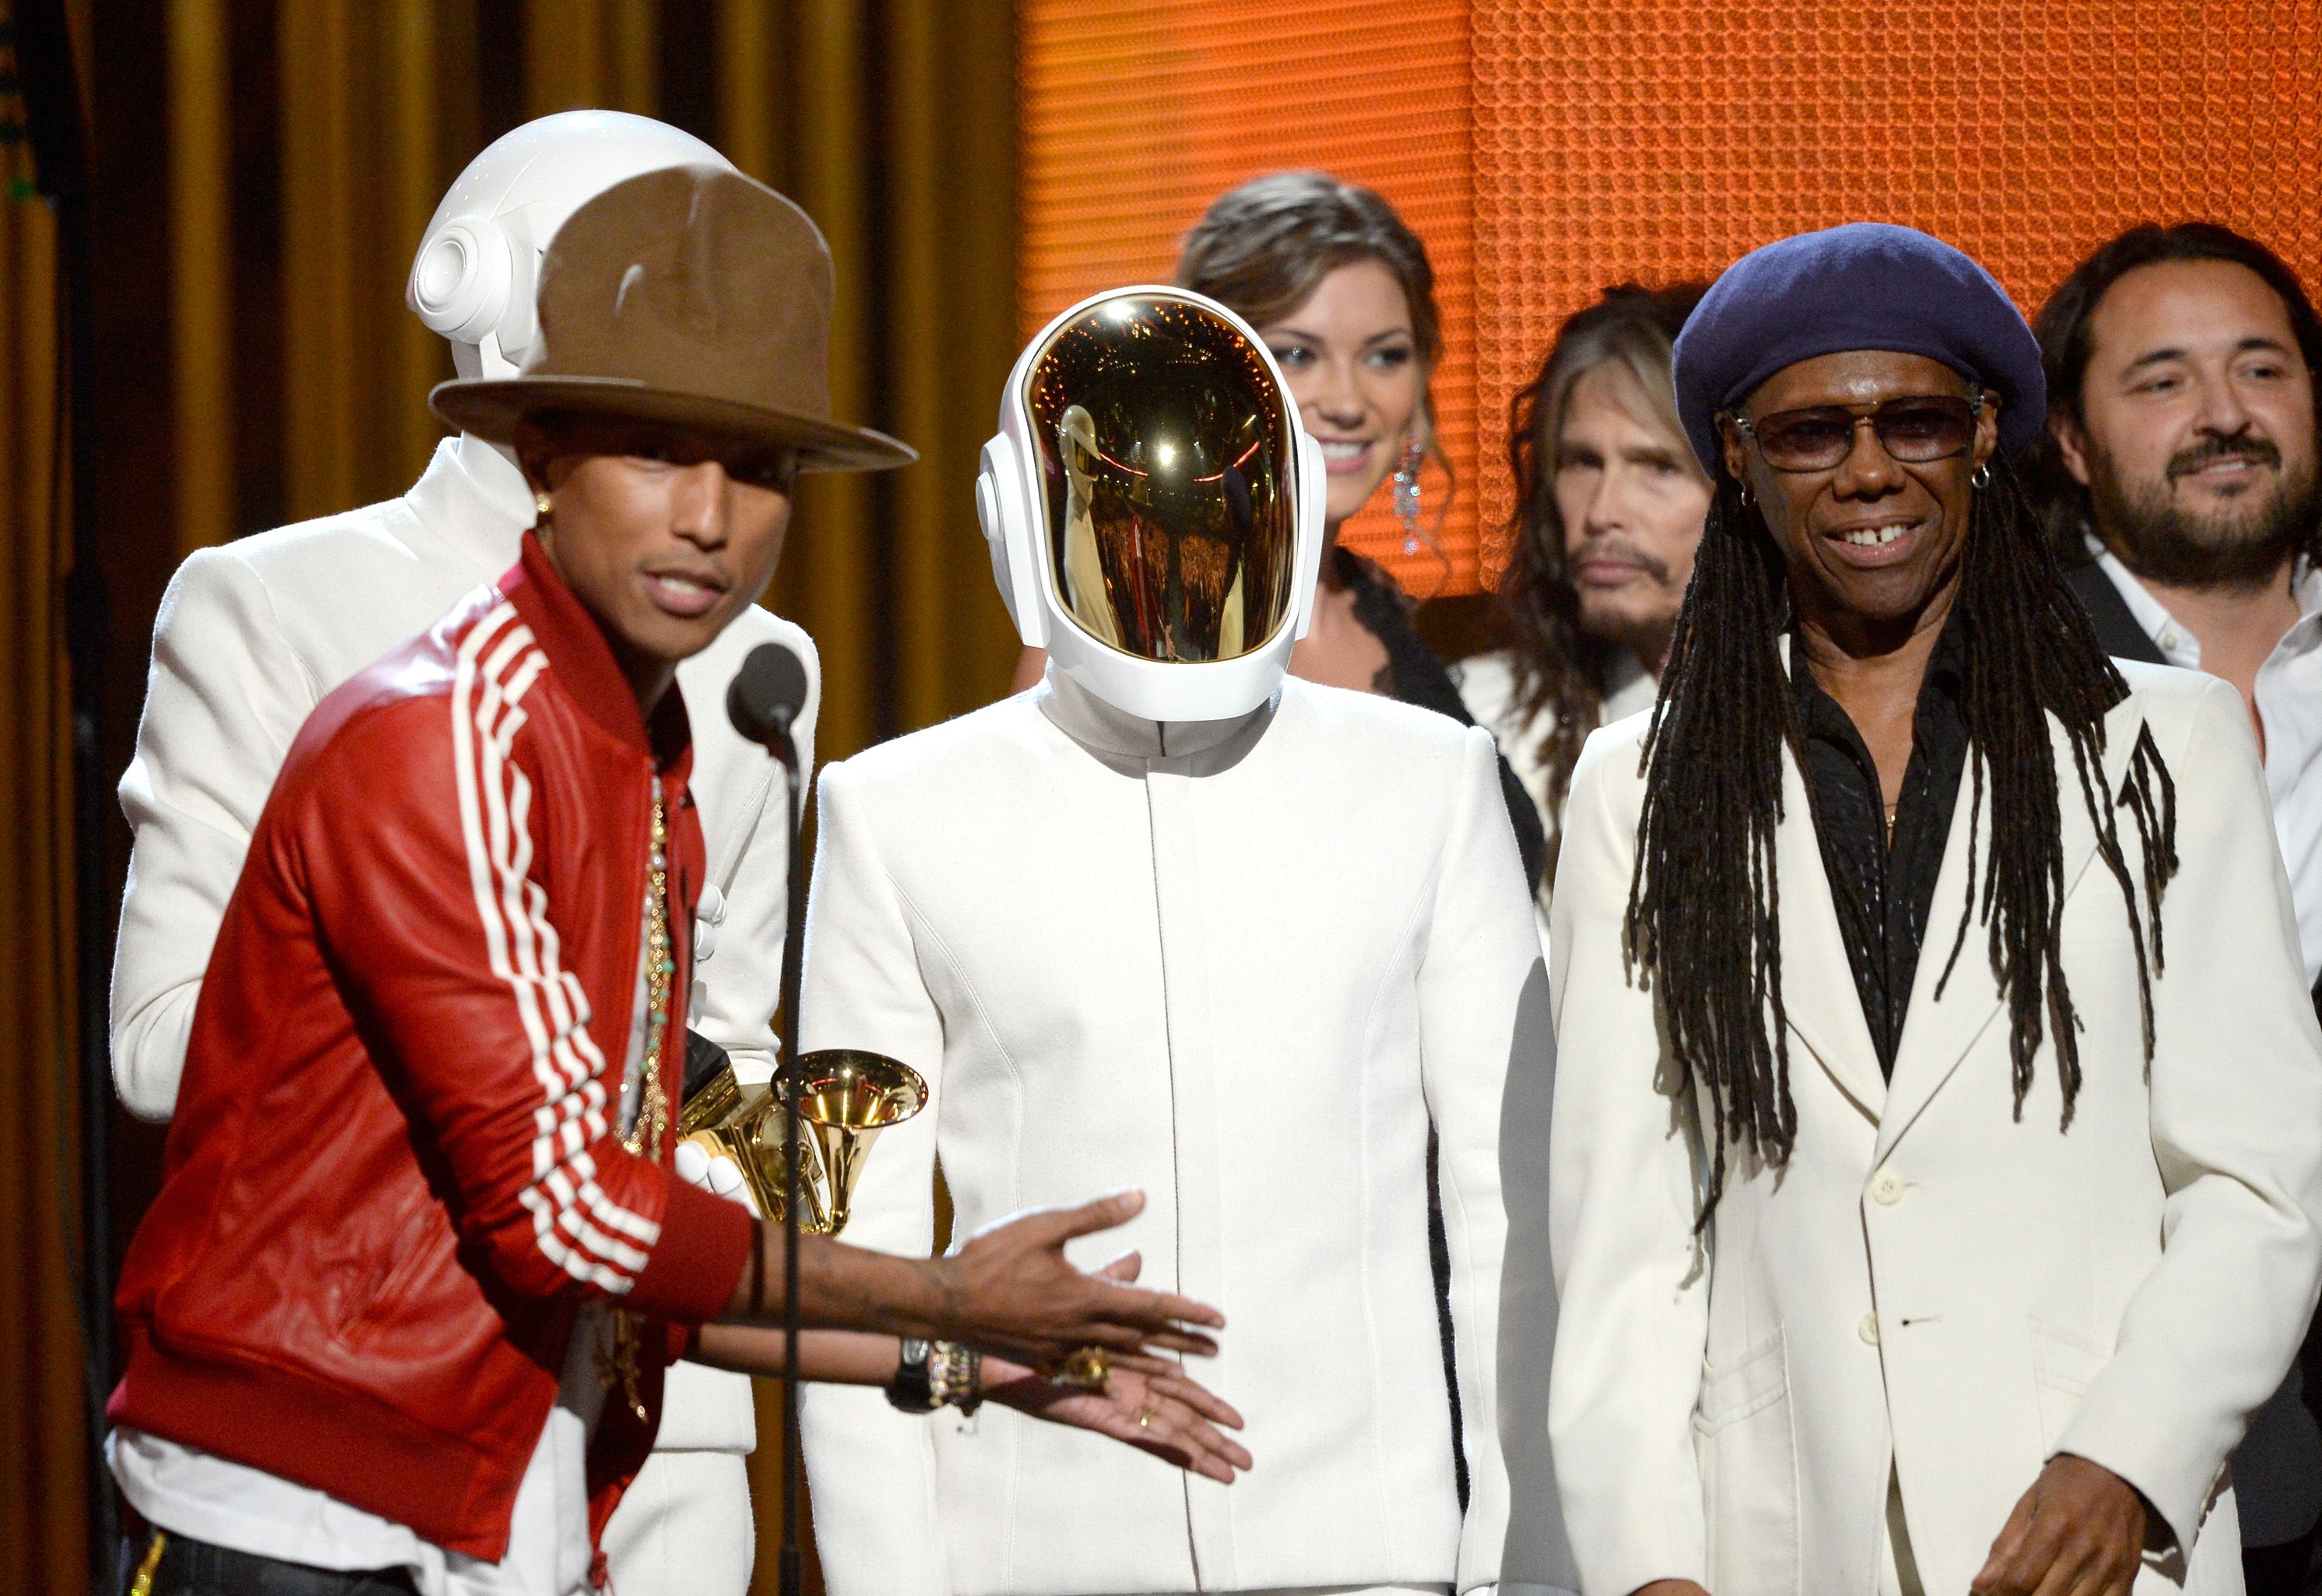 T.I, Pharrell, Jay-Z, and Q-Tip